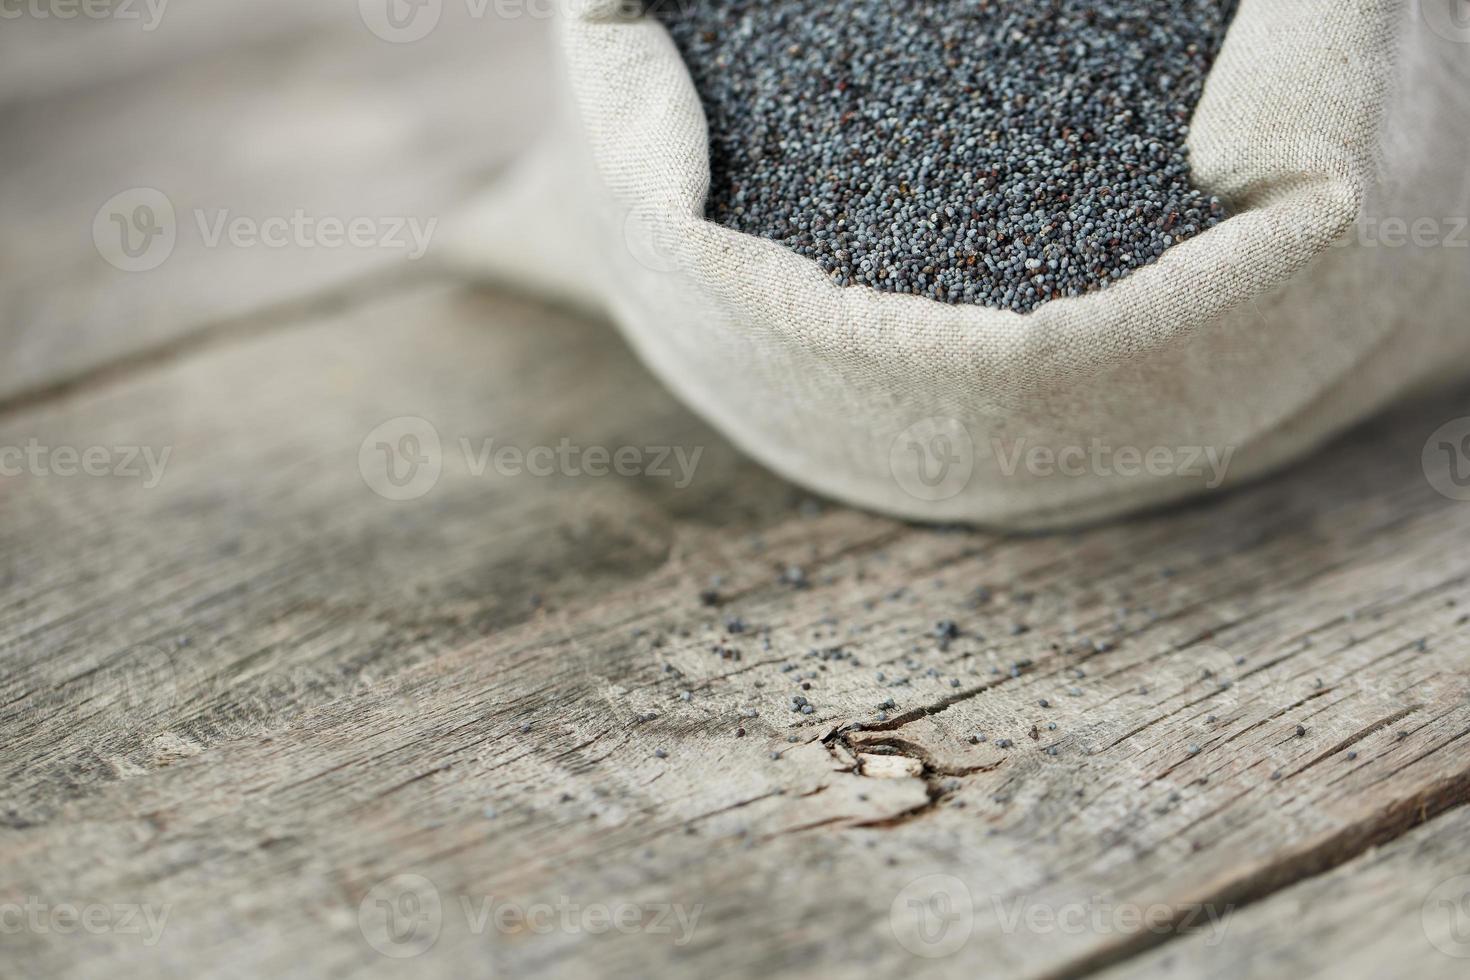 graines de pavot dans un sac de jute sur un fond gris en bois vintage. les graines savoureuses et utiles riches en protéines et en huiles. photo